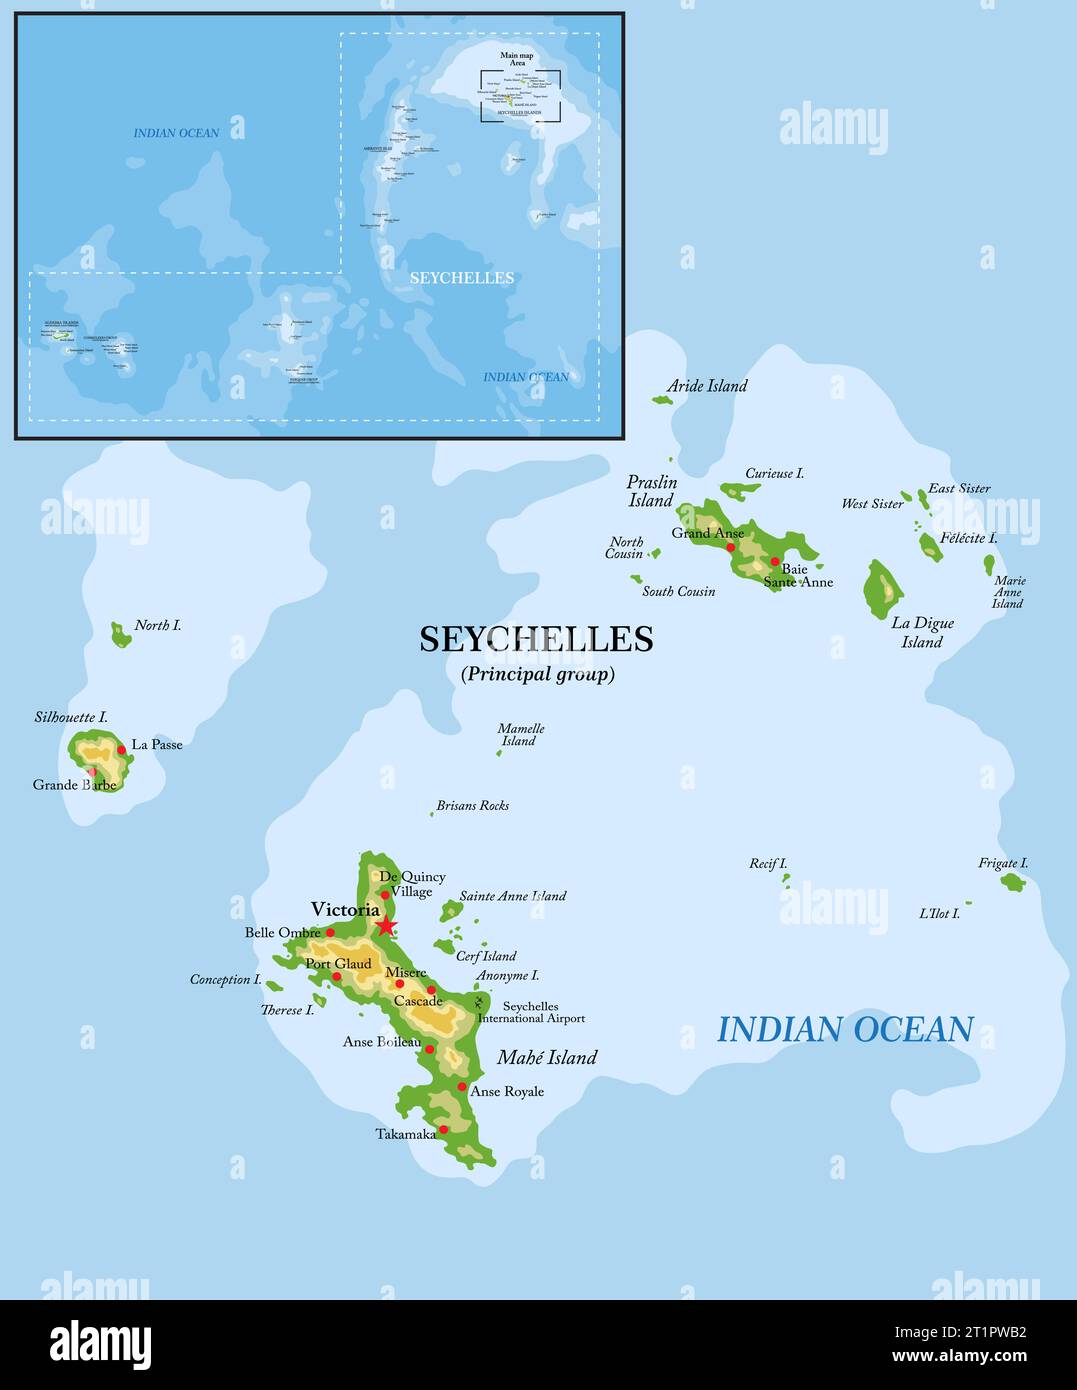 Mappa fisica altamente dettagliata delle isole Seychelles in formato vettoriale, con tutte le forme di rilievo, le regioni e le grandi città. Illustrazione Vettoriale